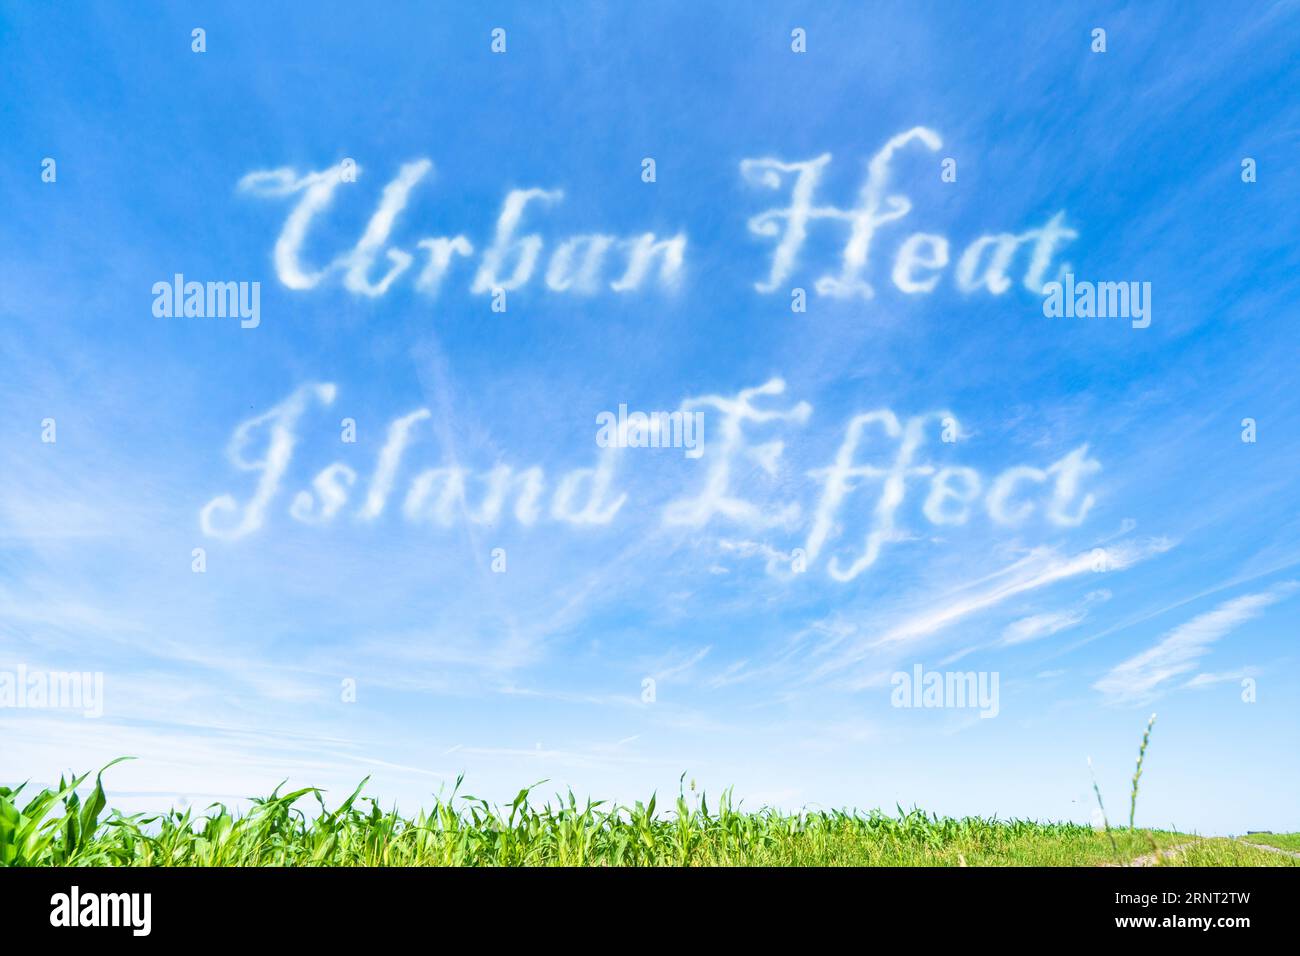 Urban Heat Island-Effekt: Erhöhte Temperaturen in städtischen Gebieten aufgrund menschlicher Aktivitäten und fehlender Vegetation. Stockfoto